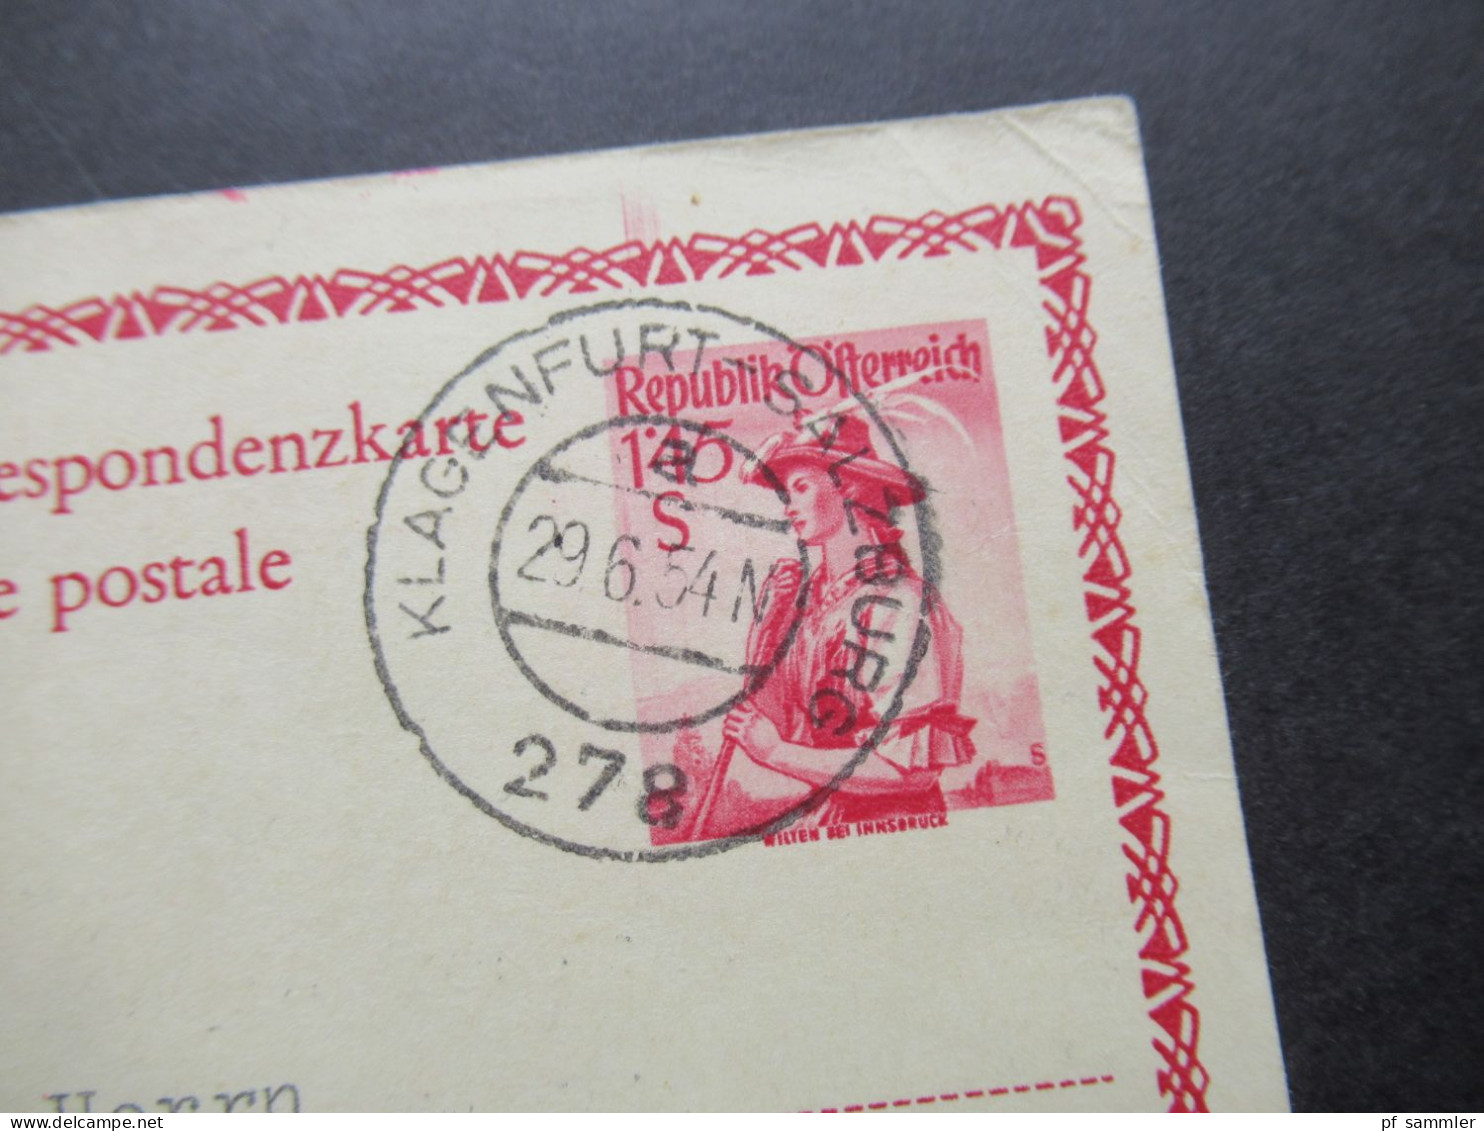 Österreich 1954 2x Bildganzsache Oetz im Oetztal 1x mit Stempel Verkehrsverein Kals Osttirol beide nach Hannover gesend